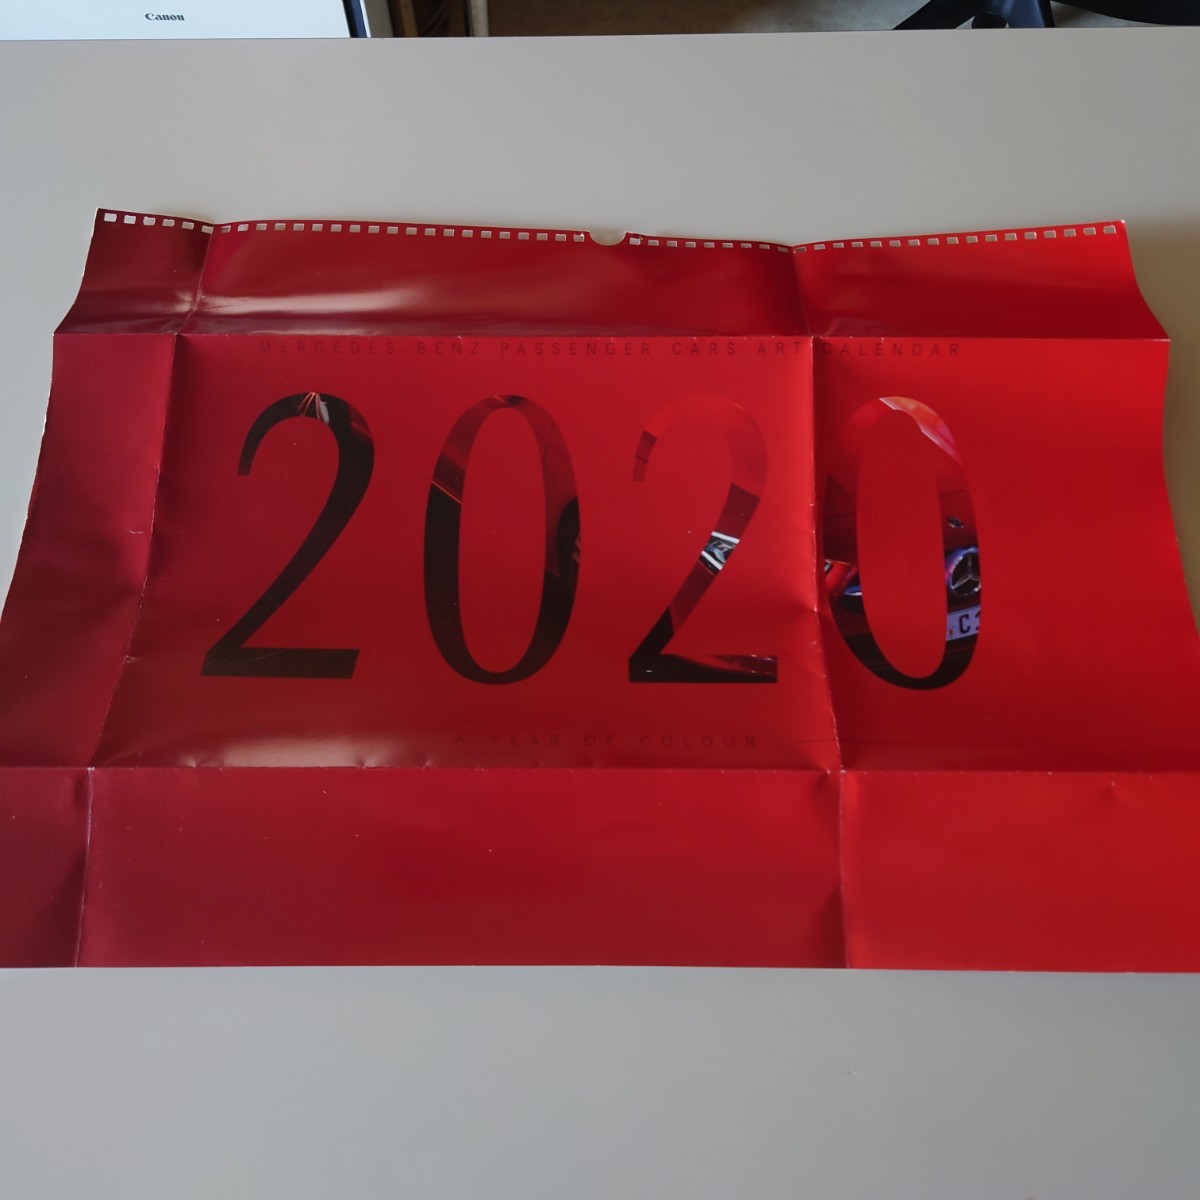 A4折込 2020年 メルセデスベンツ カレンダー